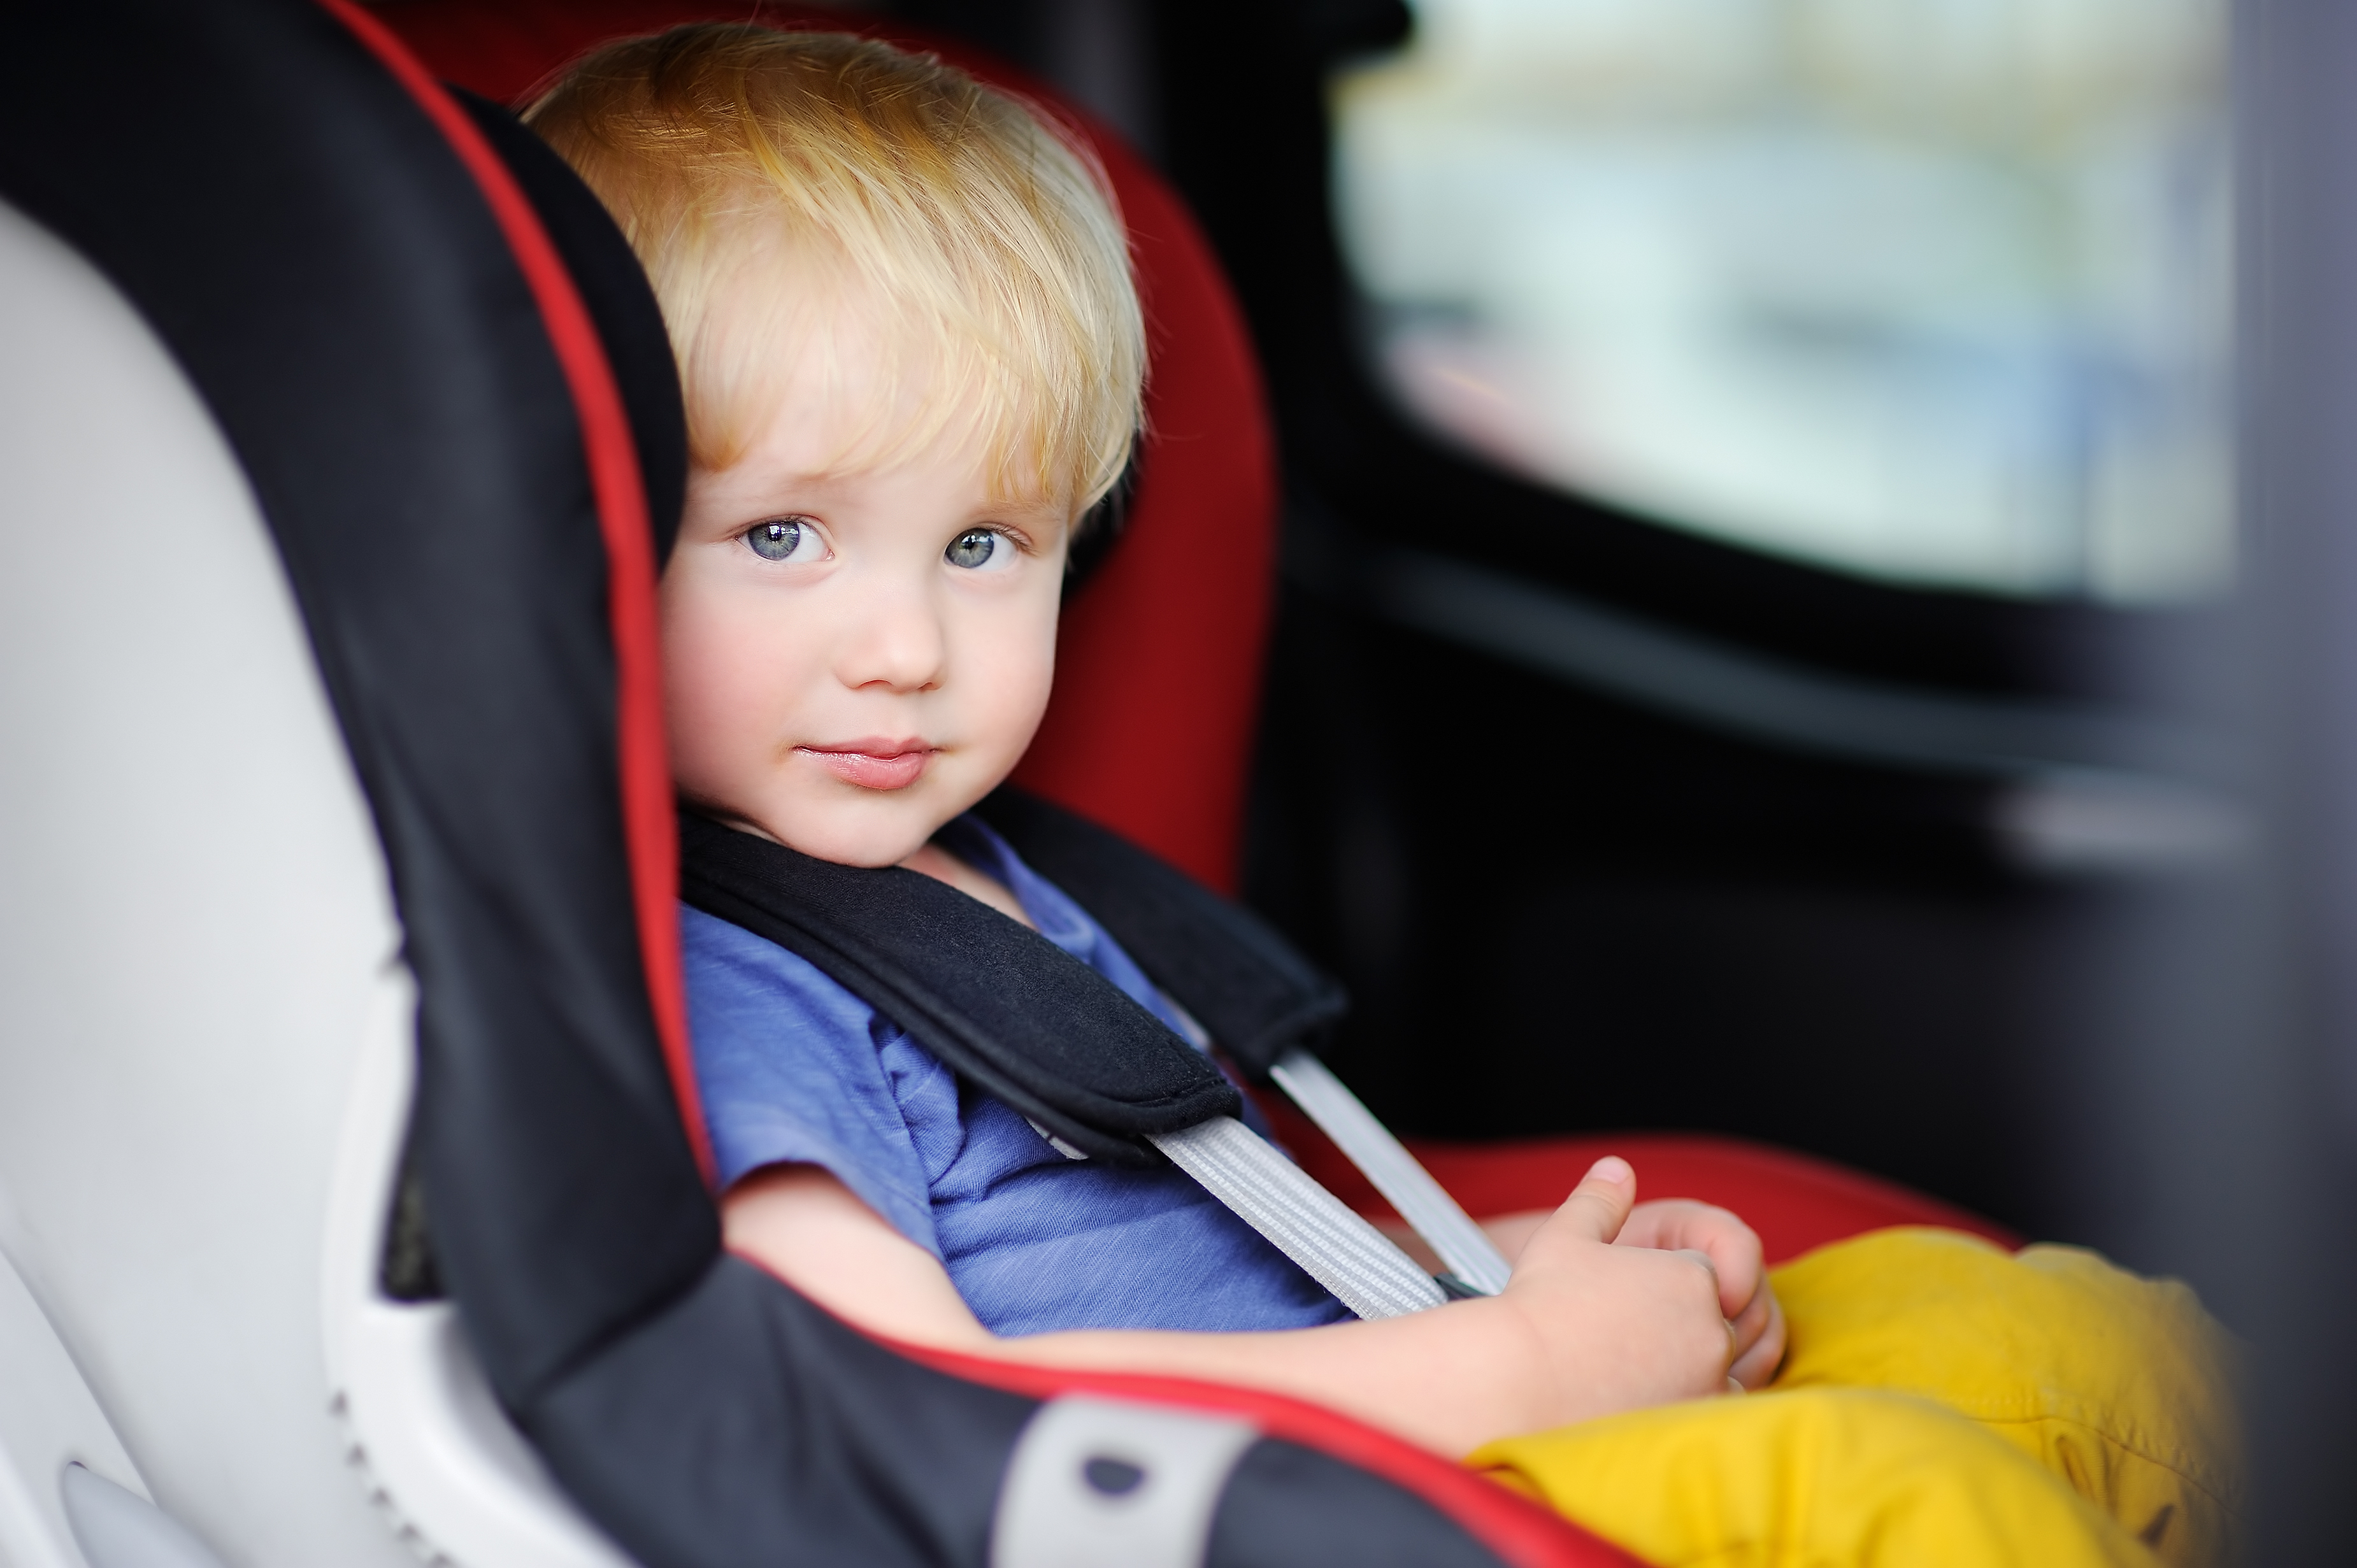 Пристегиваем ребенка в машине. Детское кресло в машину. Автомобиль для детей. Малыш в автокресле. Ребенок в детском кресле.